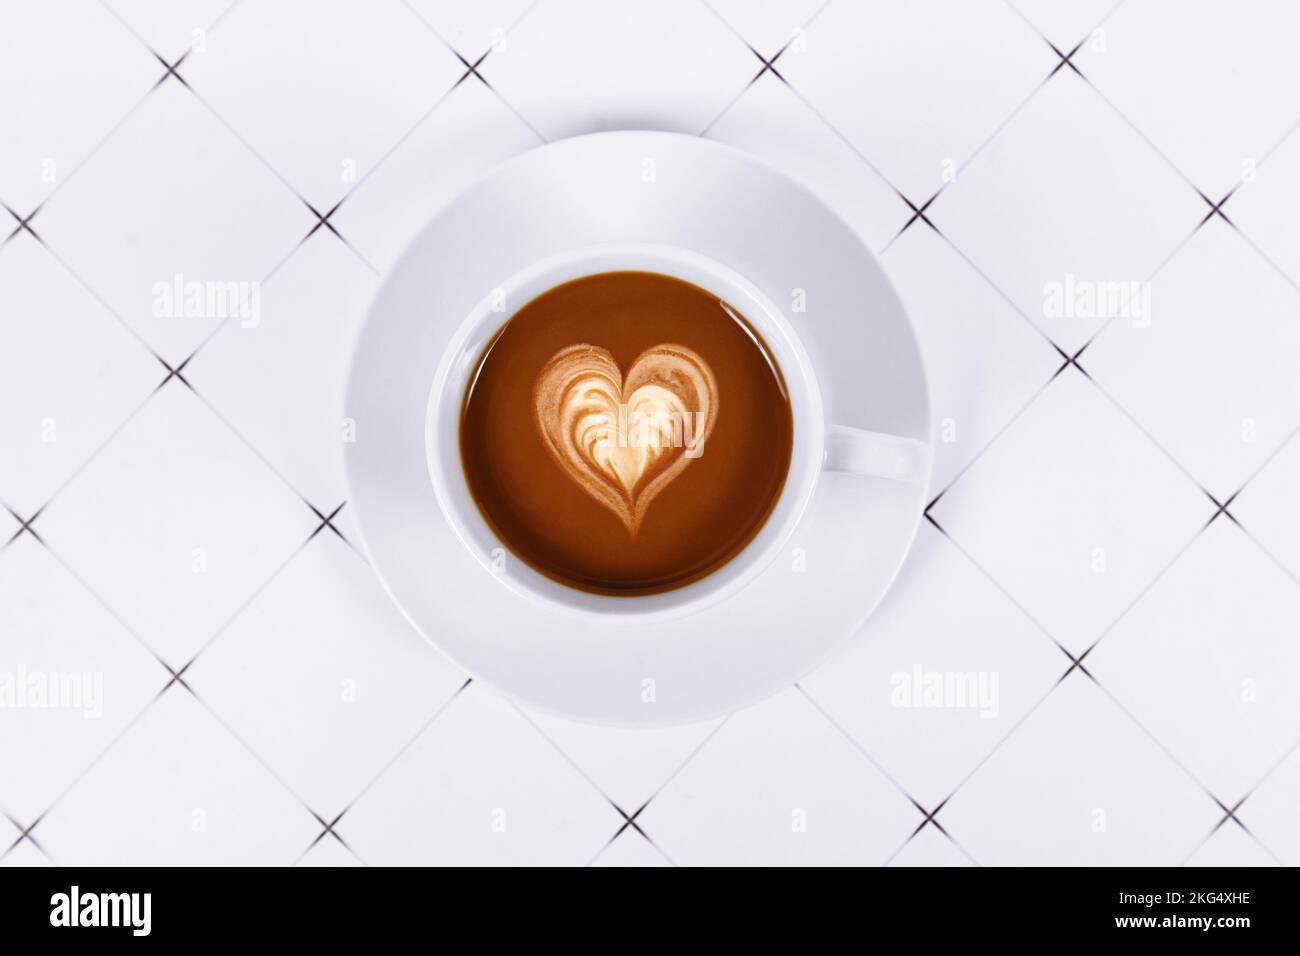 Vue de dessus d'une tasse de cacao avec art du café au lait en forme de cœur Banque D'Images